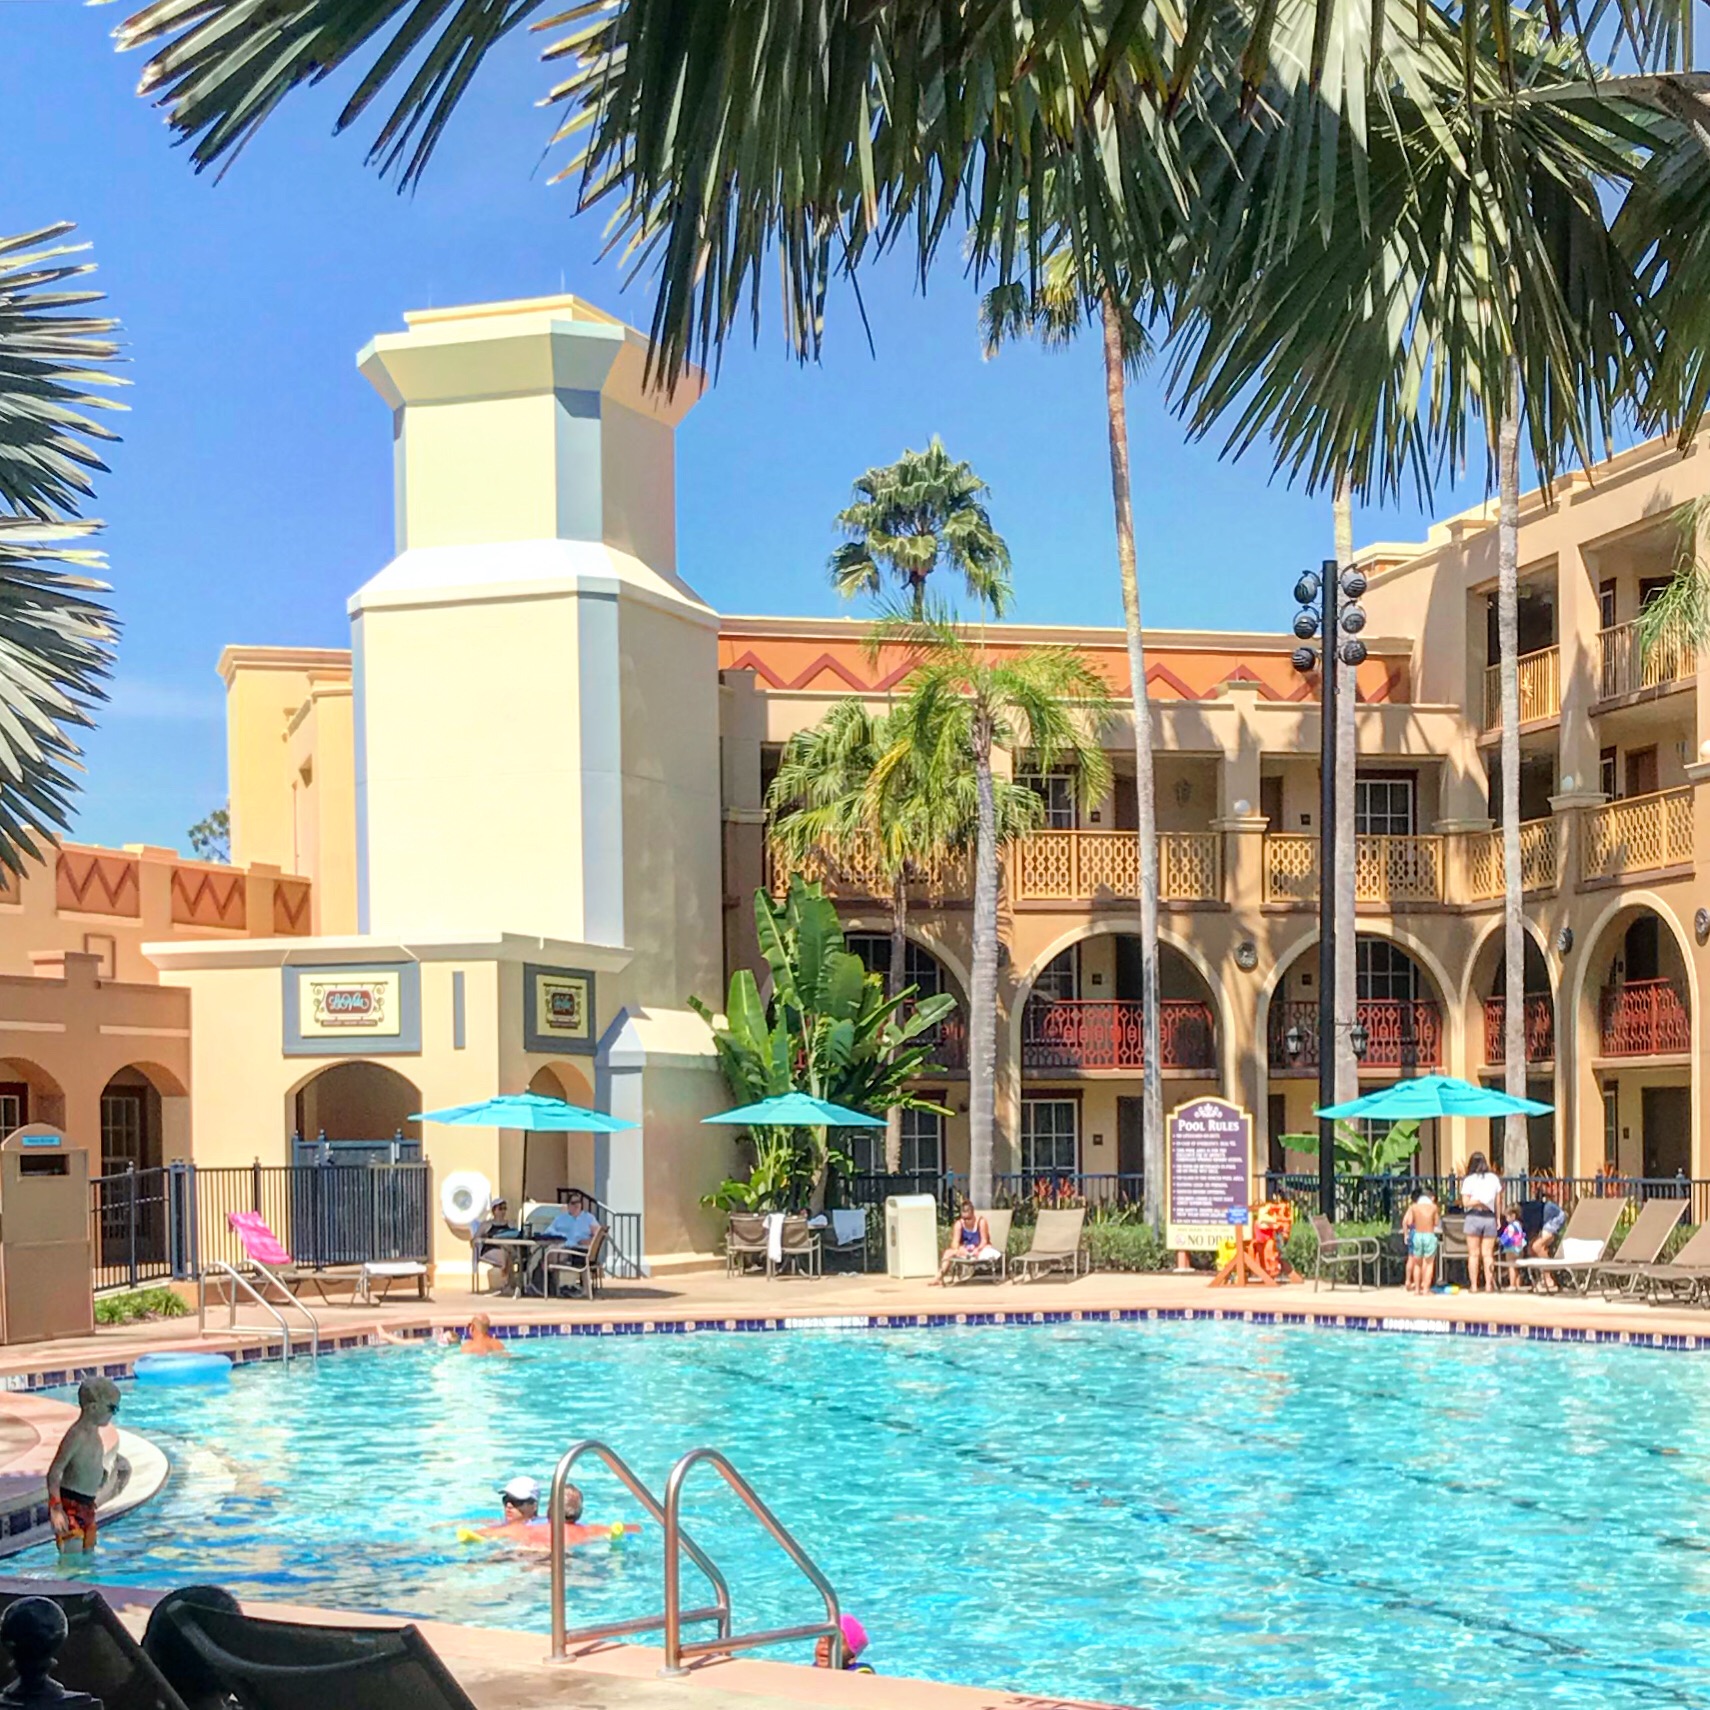 Disney's Coronado Springs Resort and pool